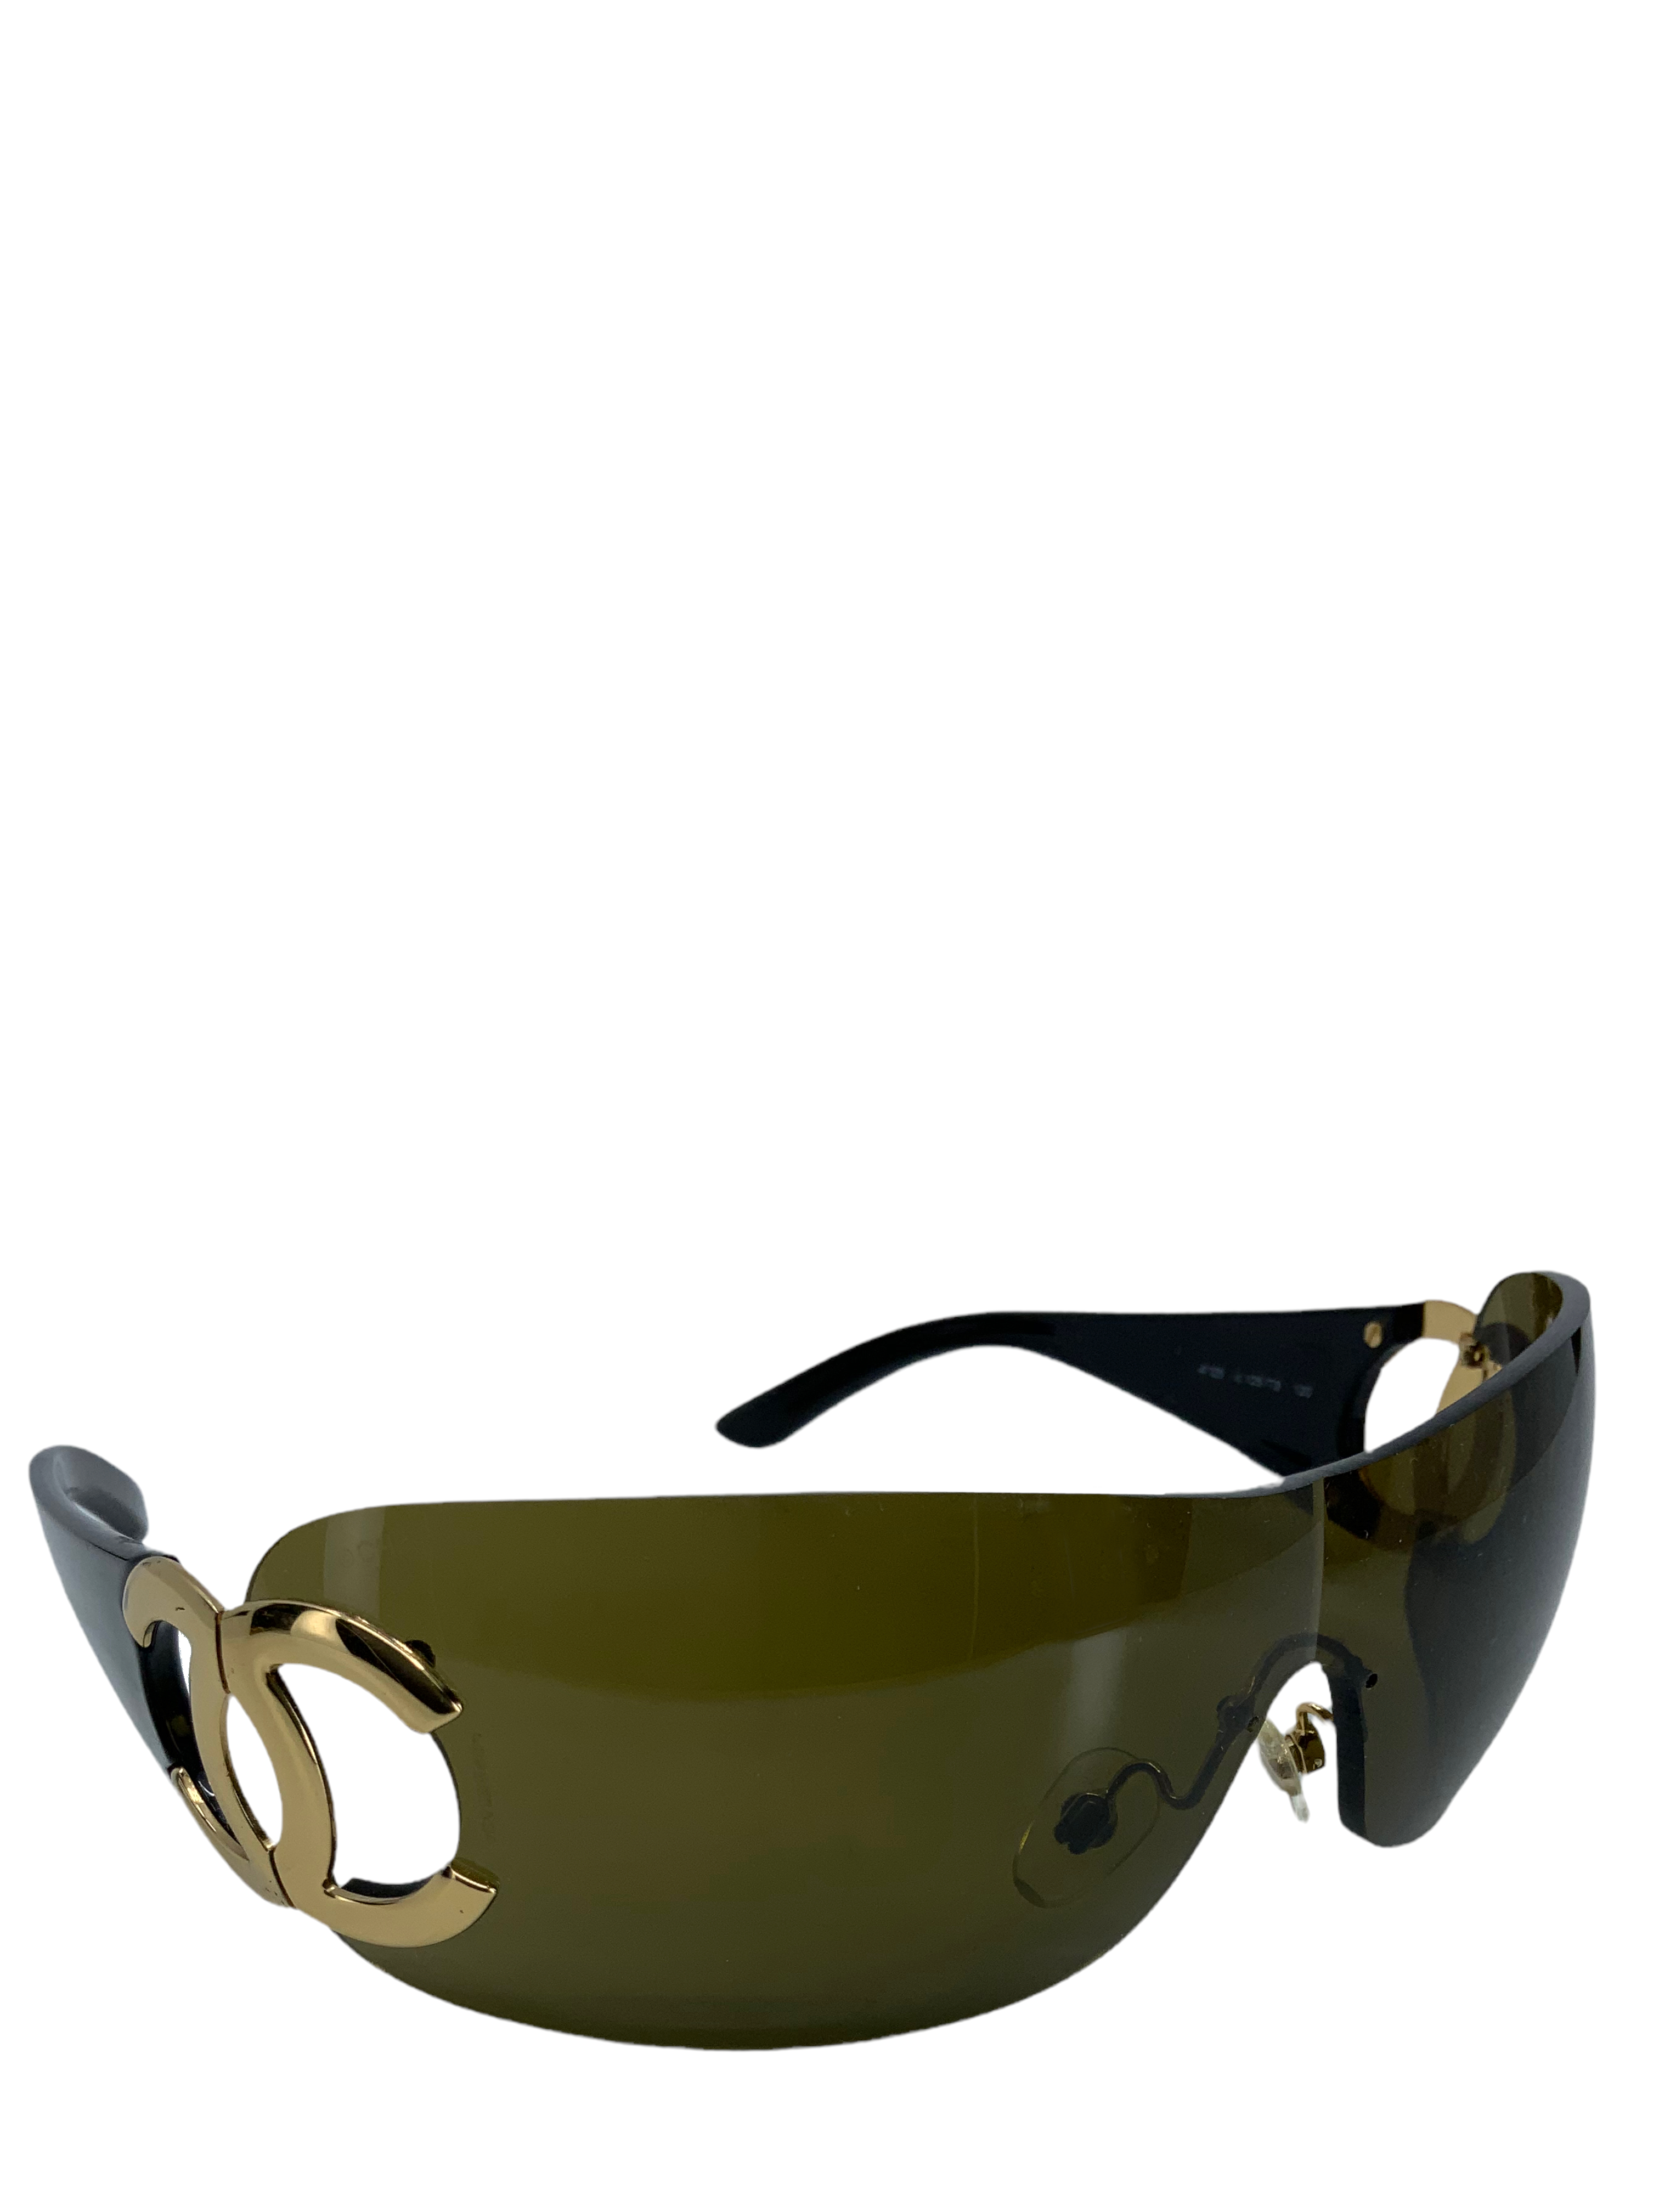 CHANEL Frameless CC Logo Sunglasses 4125 - Consigned Designs